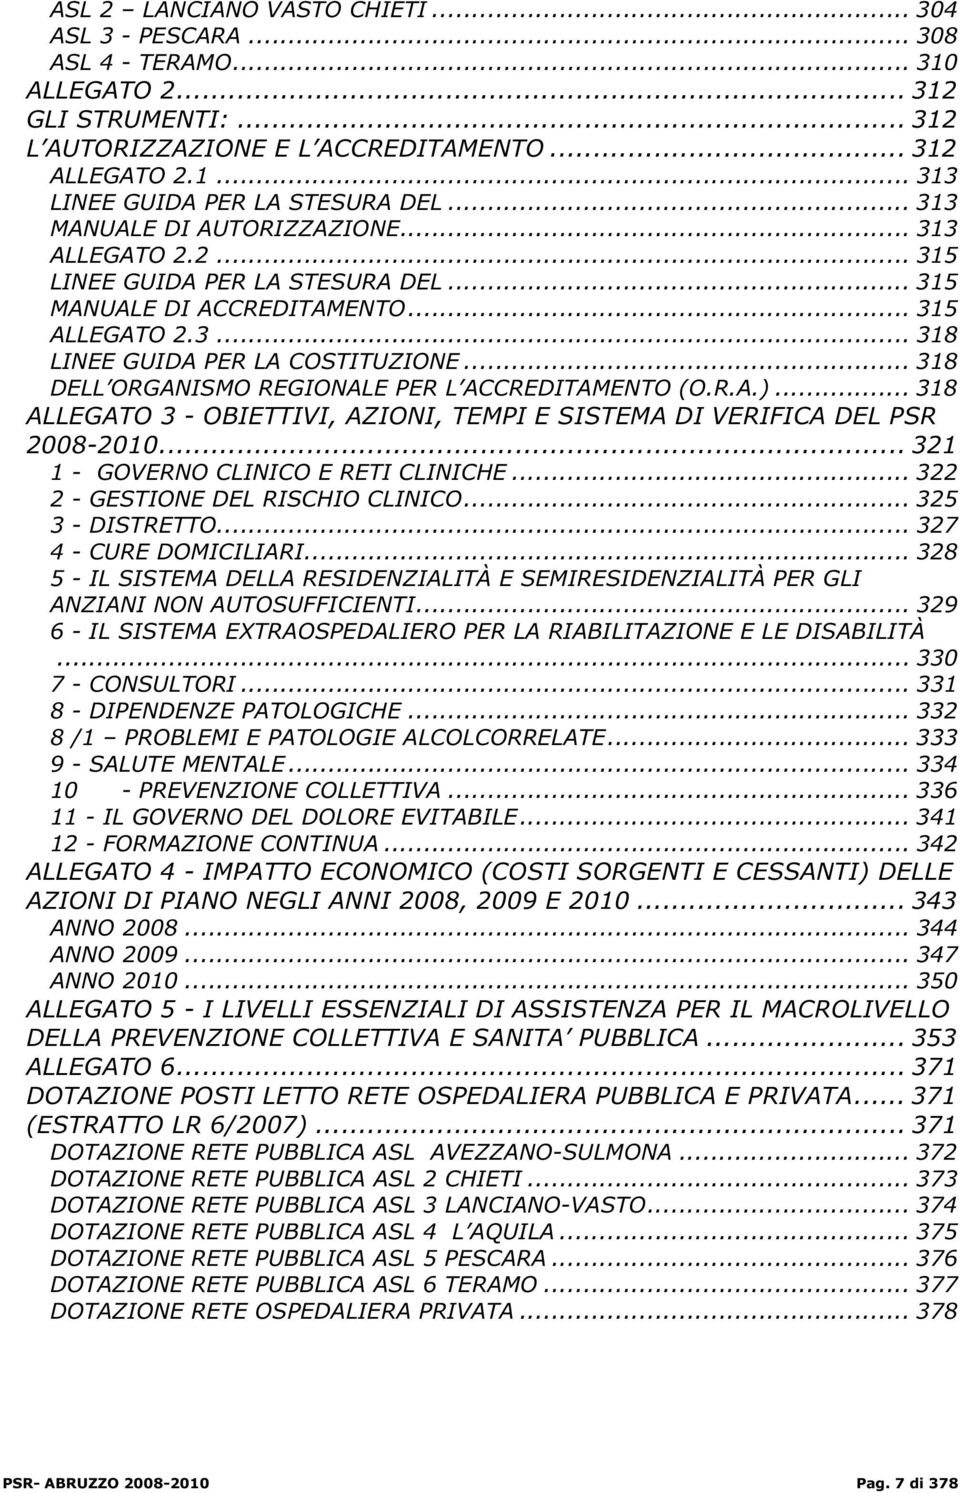 .. 318 DELL ORGANISMO REGIONALE PER L ACCREDITAMENTO (O.R.A.)... 318 ALLEGATO 3 - OBIETTIVI, AZIONI, TEMPI E SISTEMA DI VERIFICA DEL PSR 2008-2010... 321 1 - GOVERNO CLINICO E RETI CLINICHE.